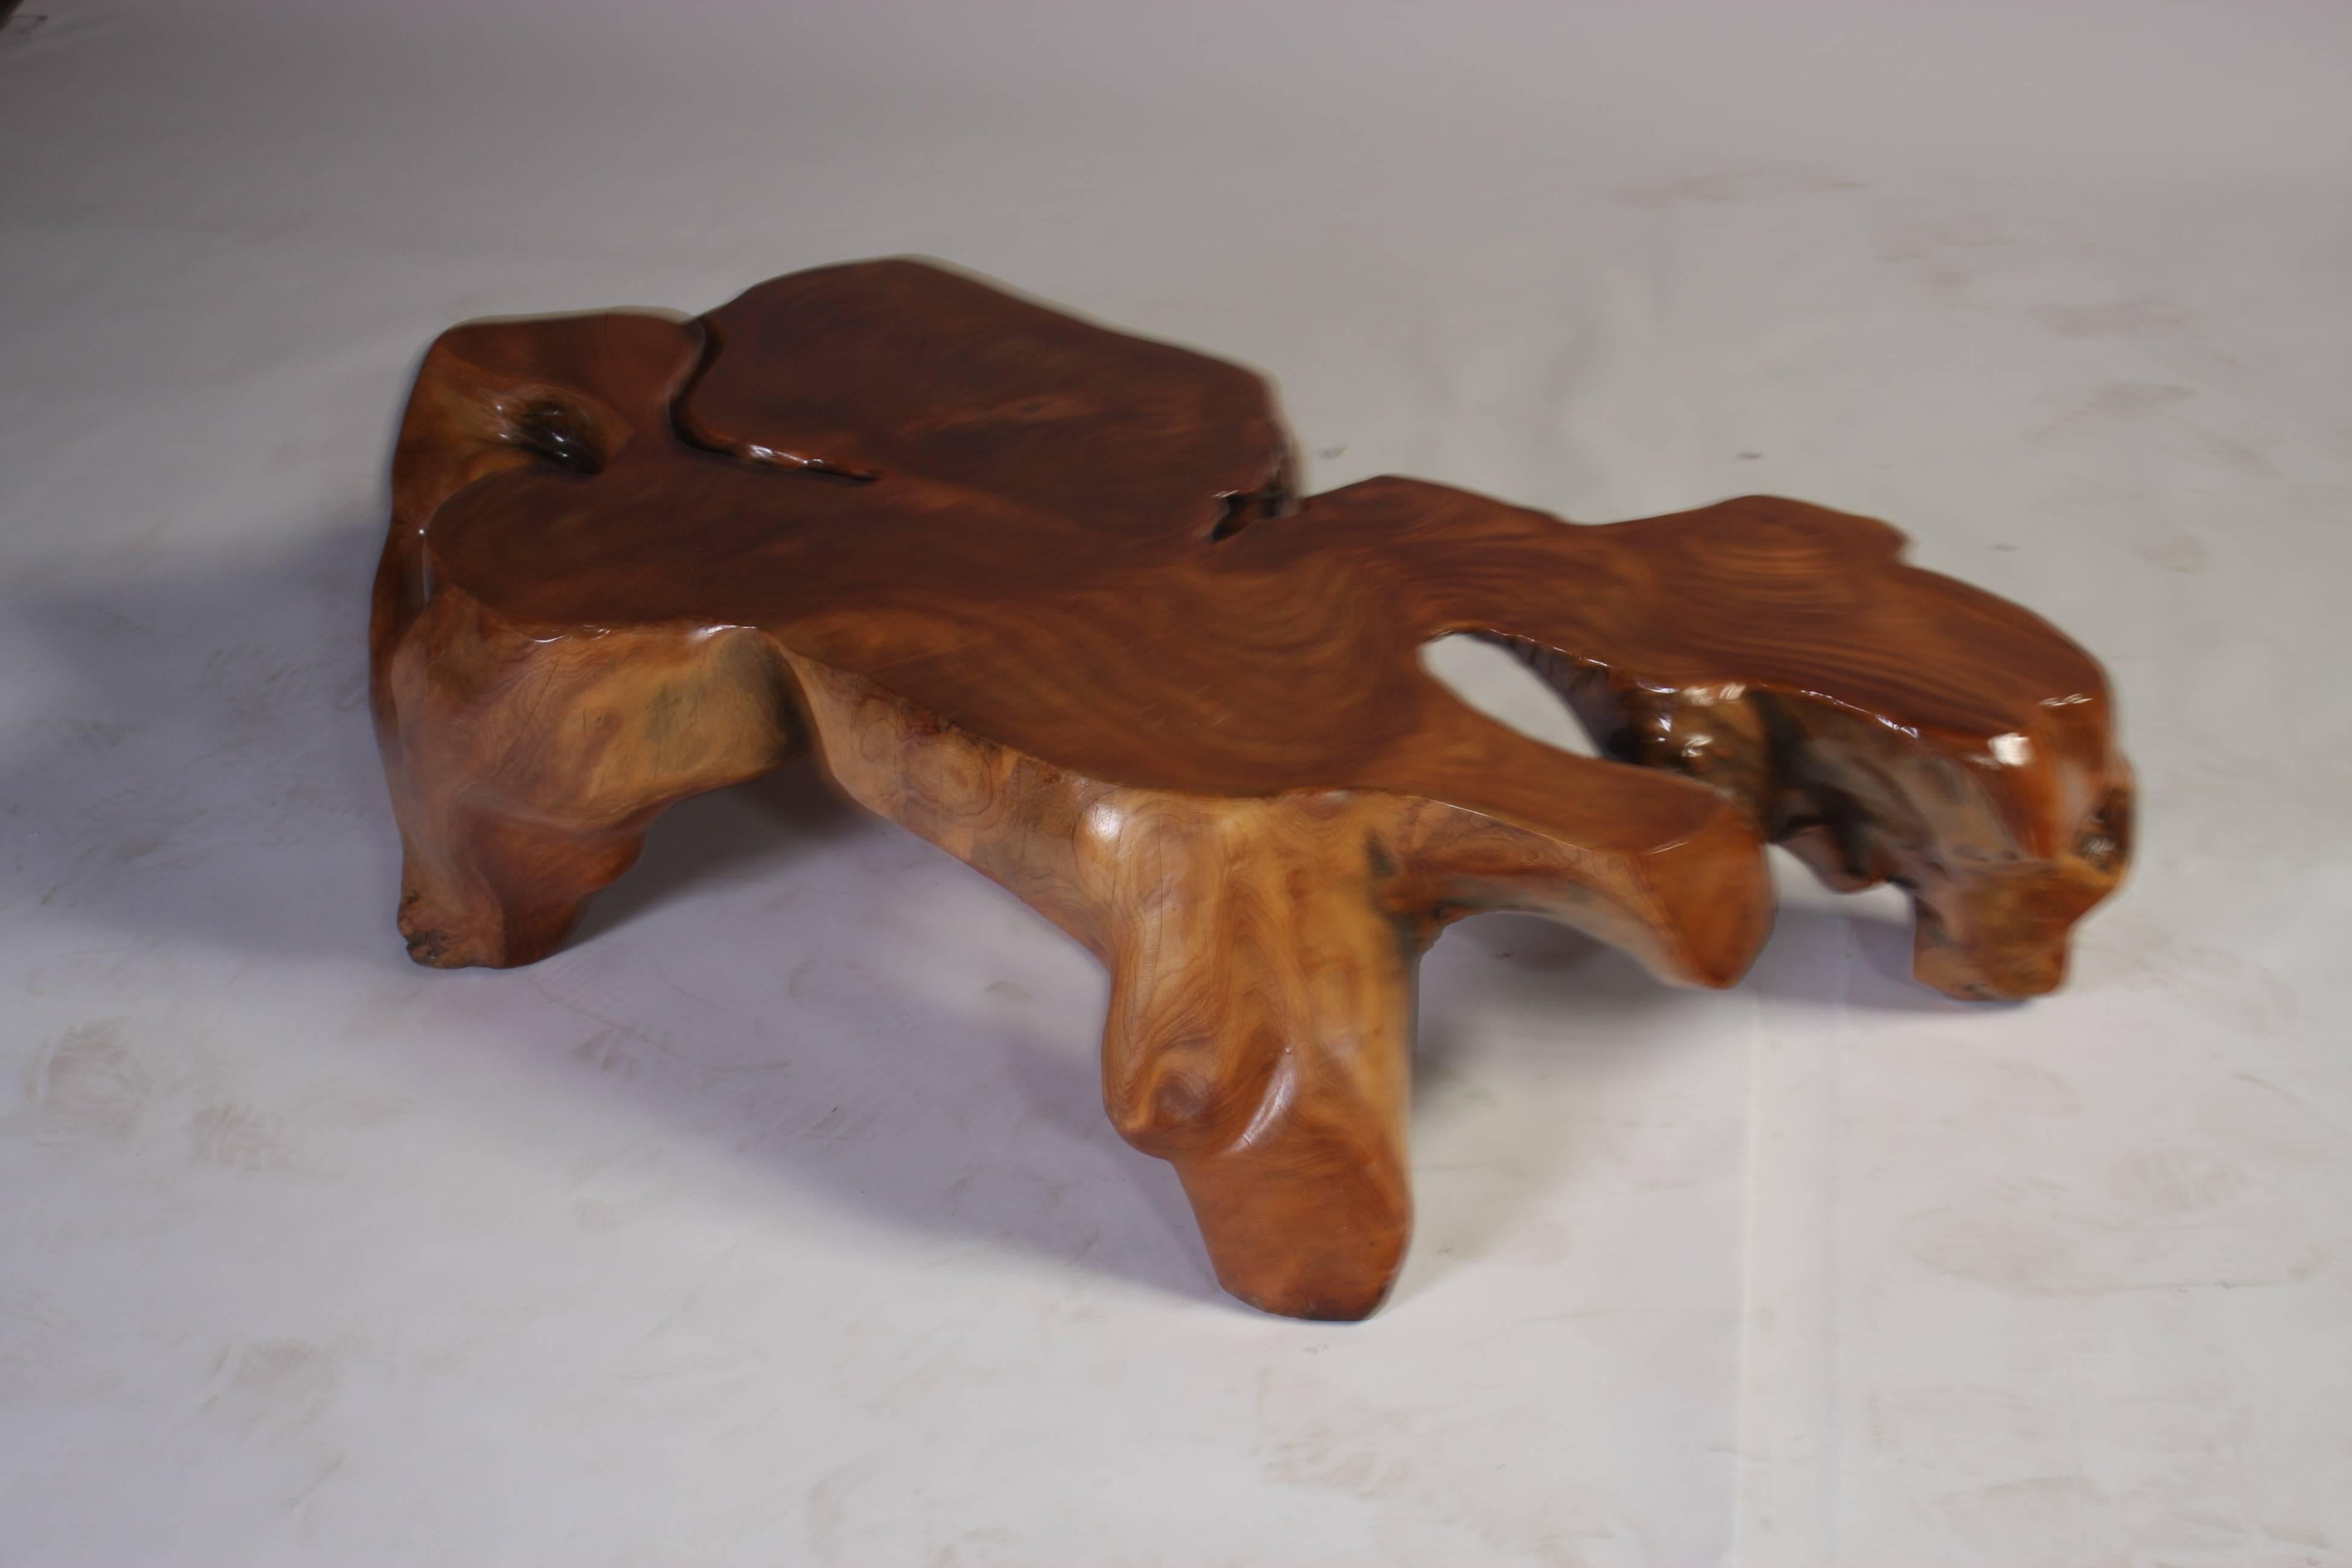 Wood Natural Teak Root Sculptural Tree Coffee Table